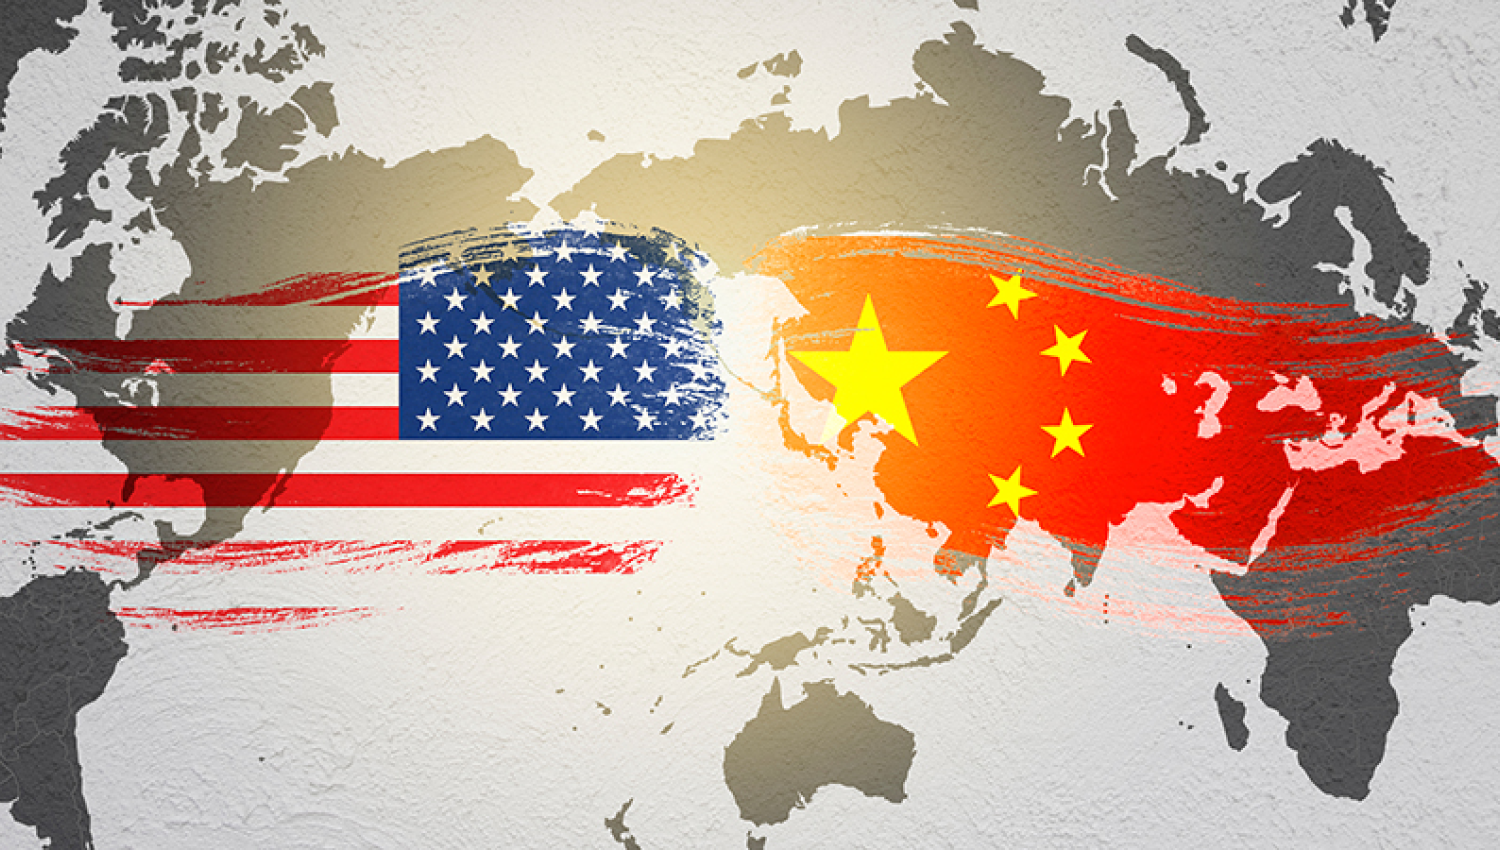 النرجسية الأمريكية vs الكونفوشية الصينية: من سيحكم العالم؟